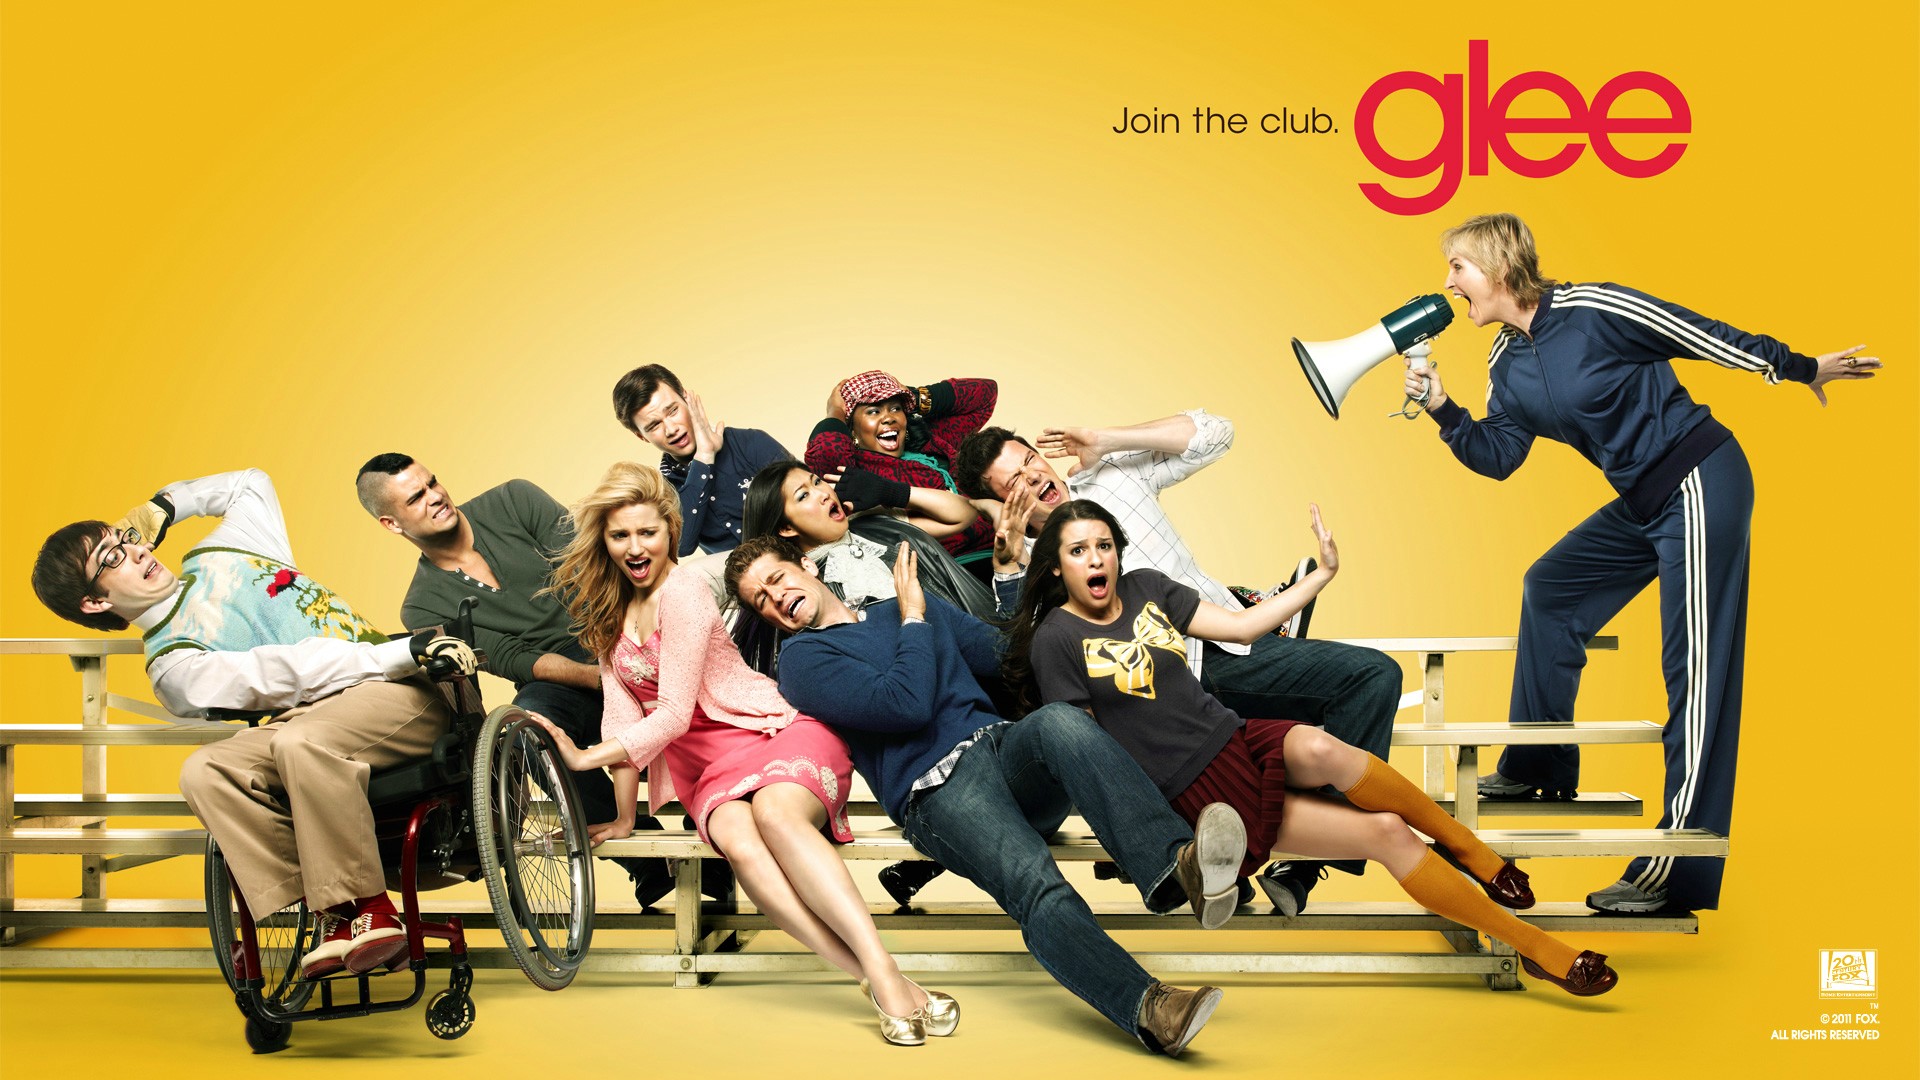 Glee Wallpaper Popular Teenager Tv Seriespicture For Desktop